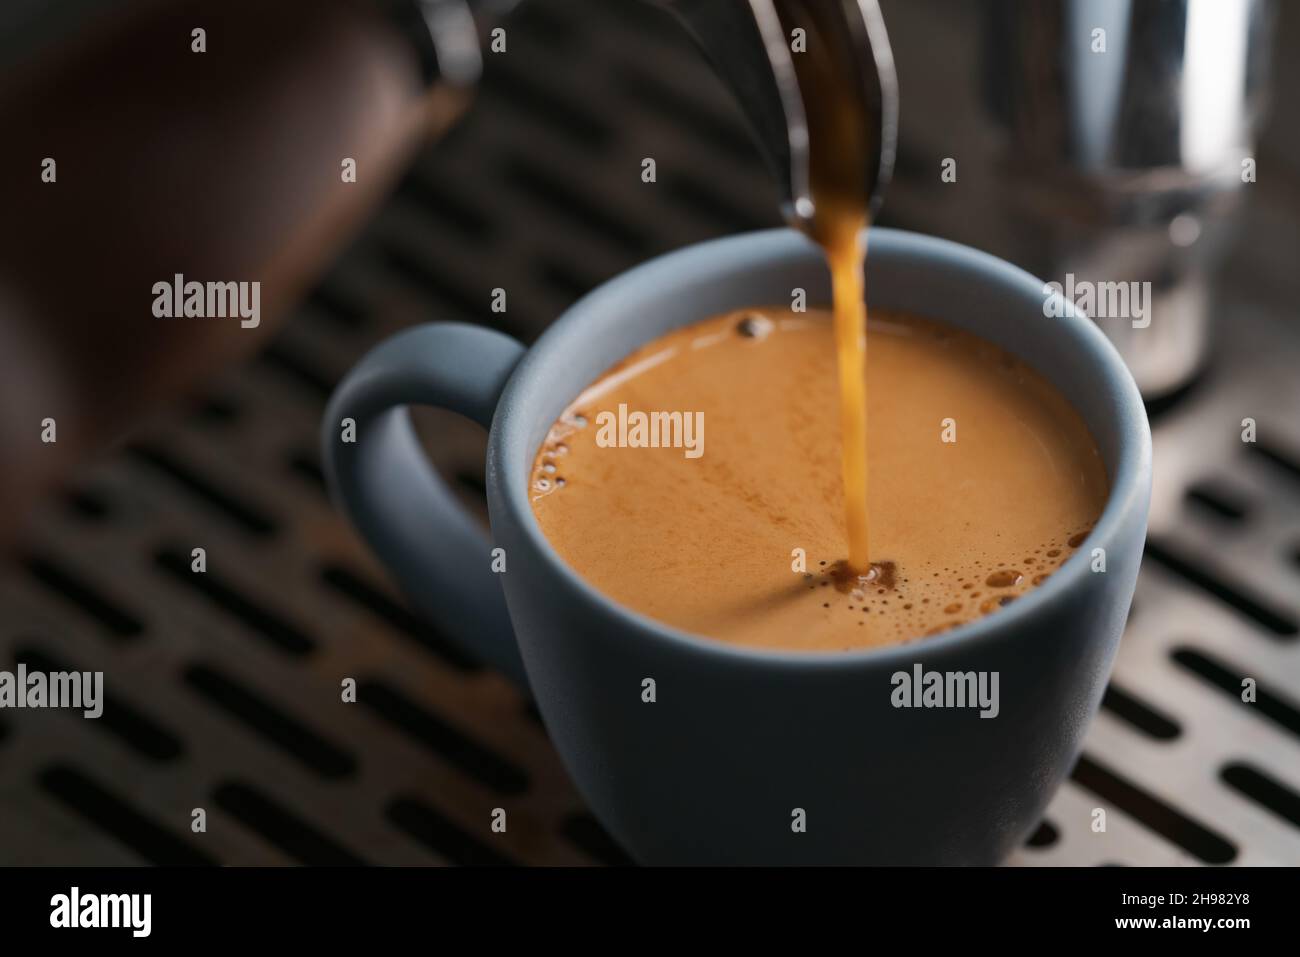 Gros plan espresso verser avec un porte-filtre à bec unique dans une tasse bleue, peu de profondeur de mise au point Banque D'Images